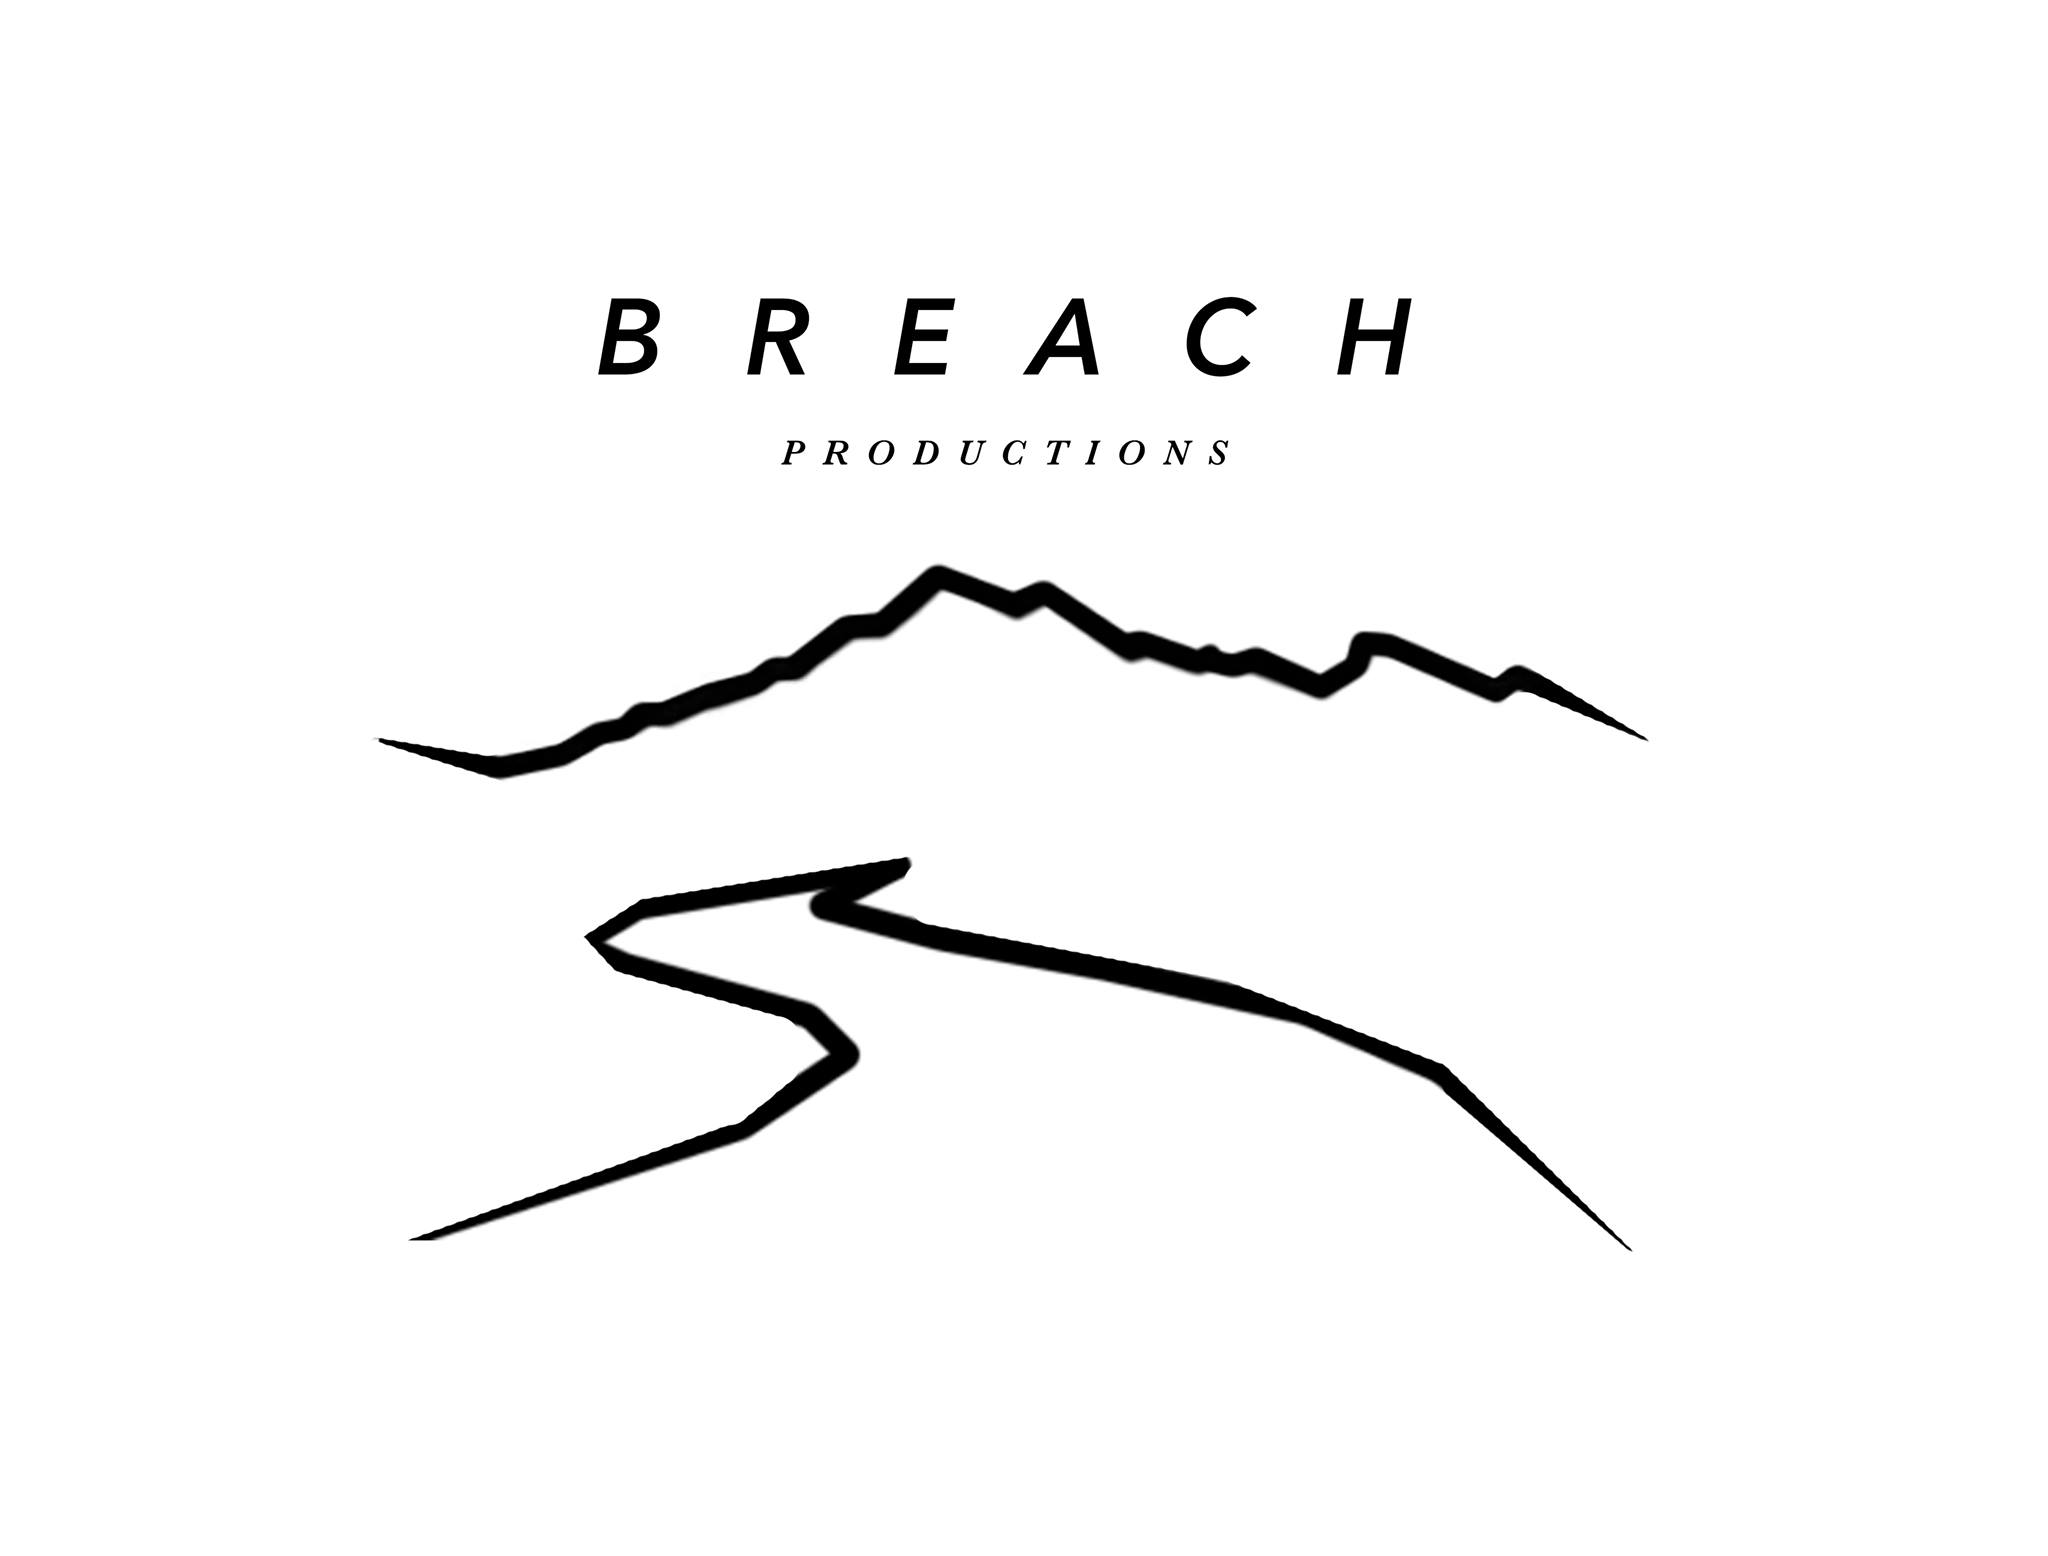 Breach Productions LLC